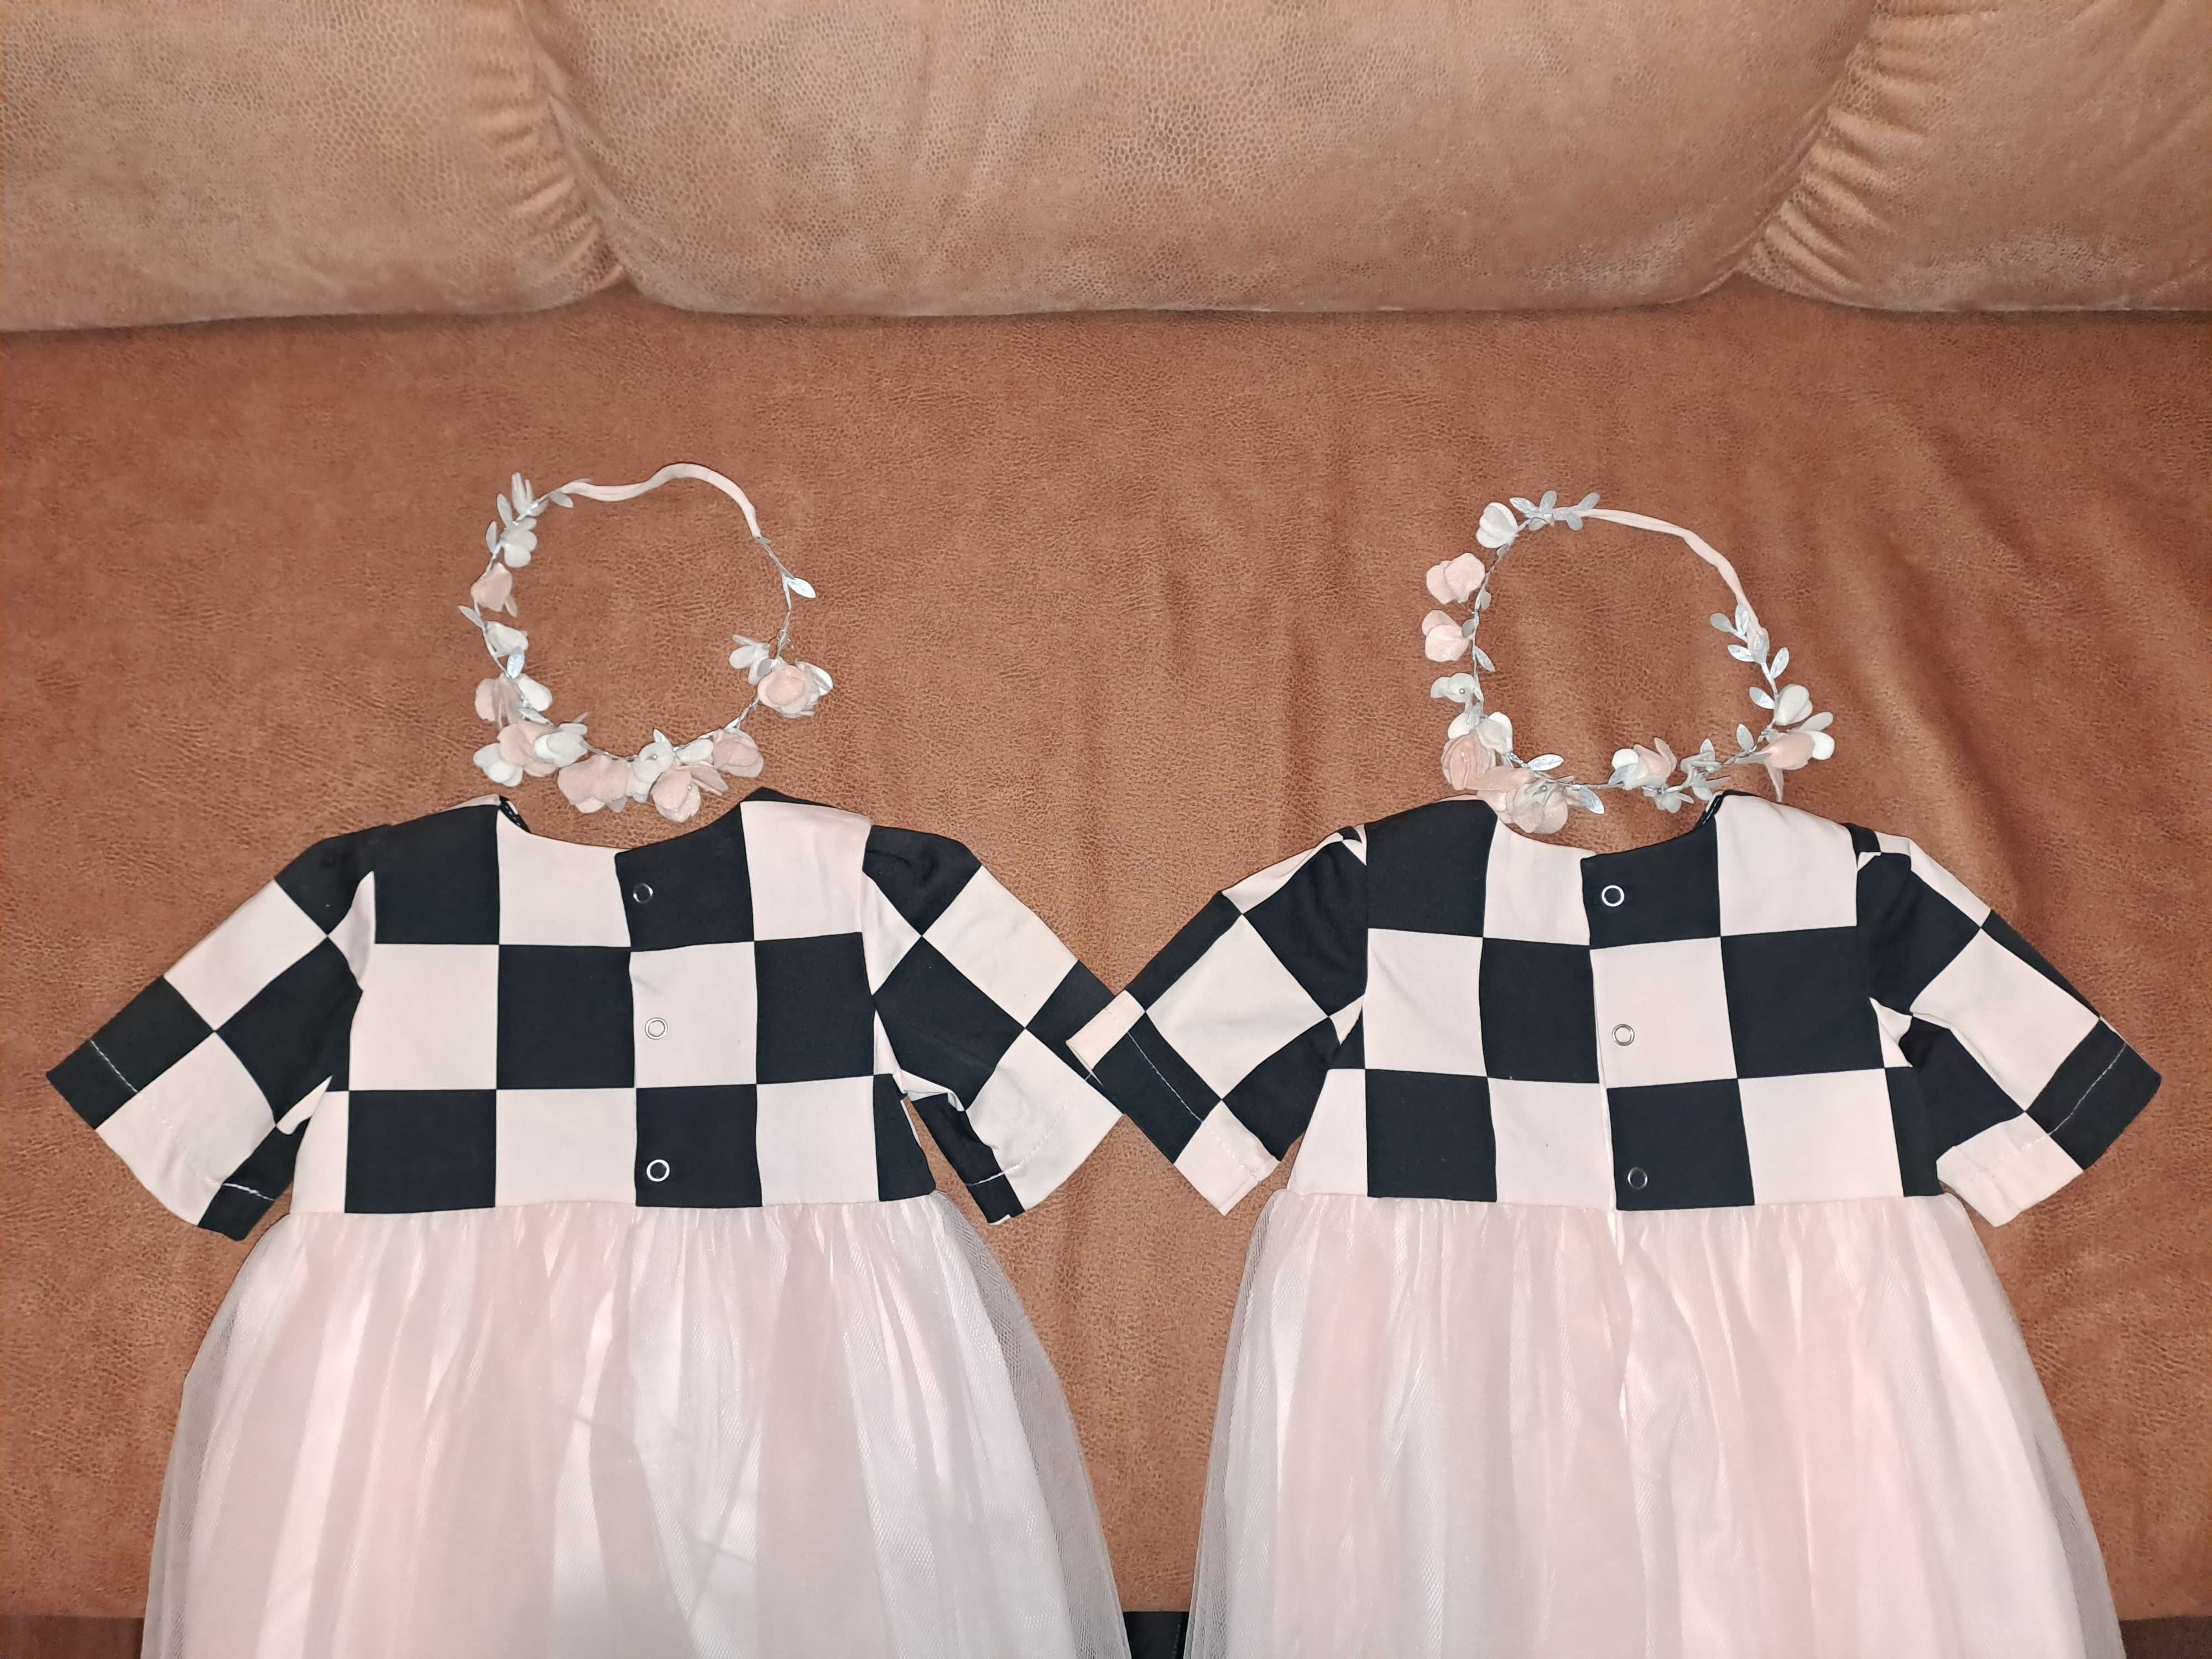 Продам на годик два эксклюзивных платья для двойняшек, близняшек